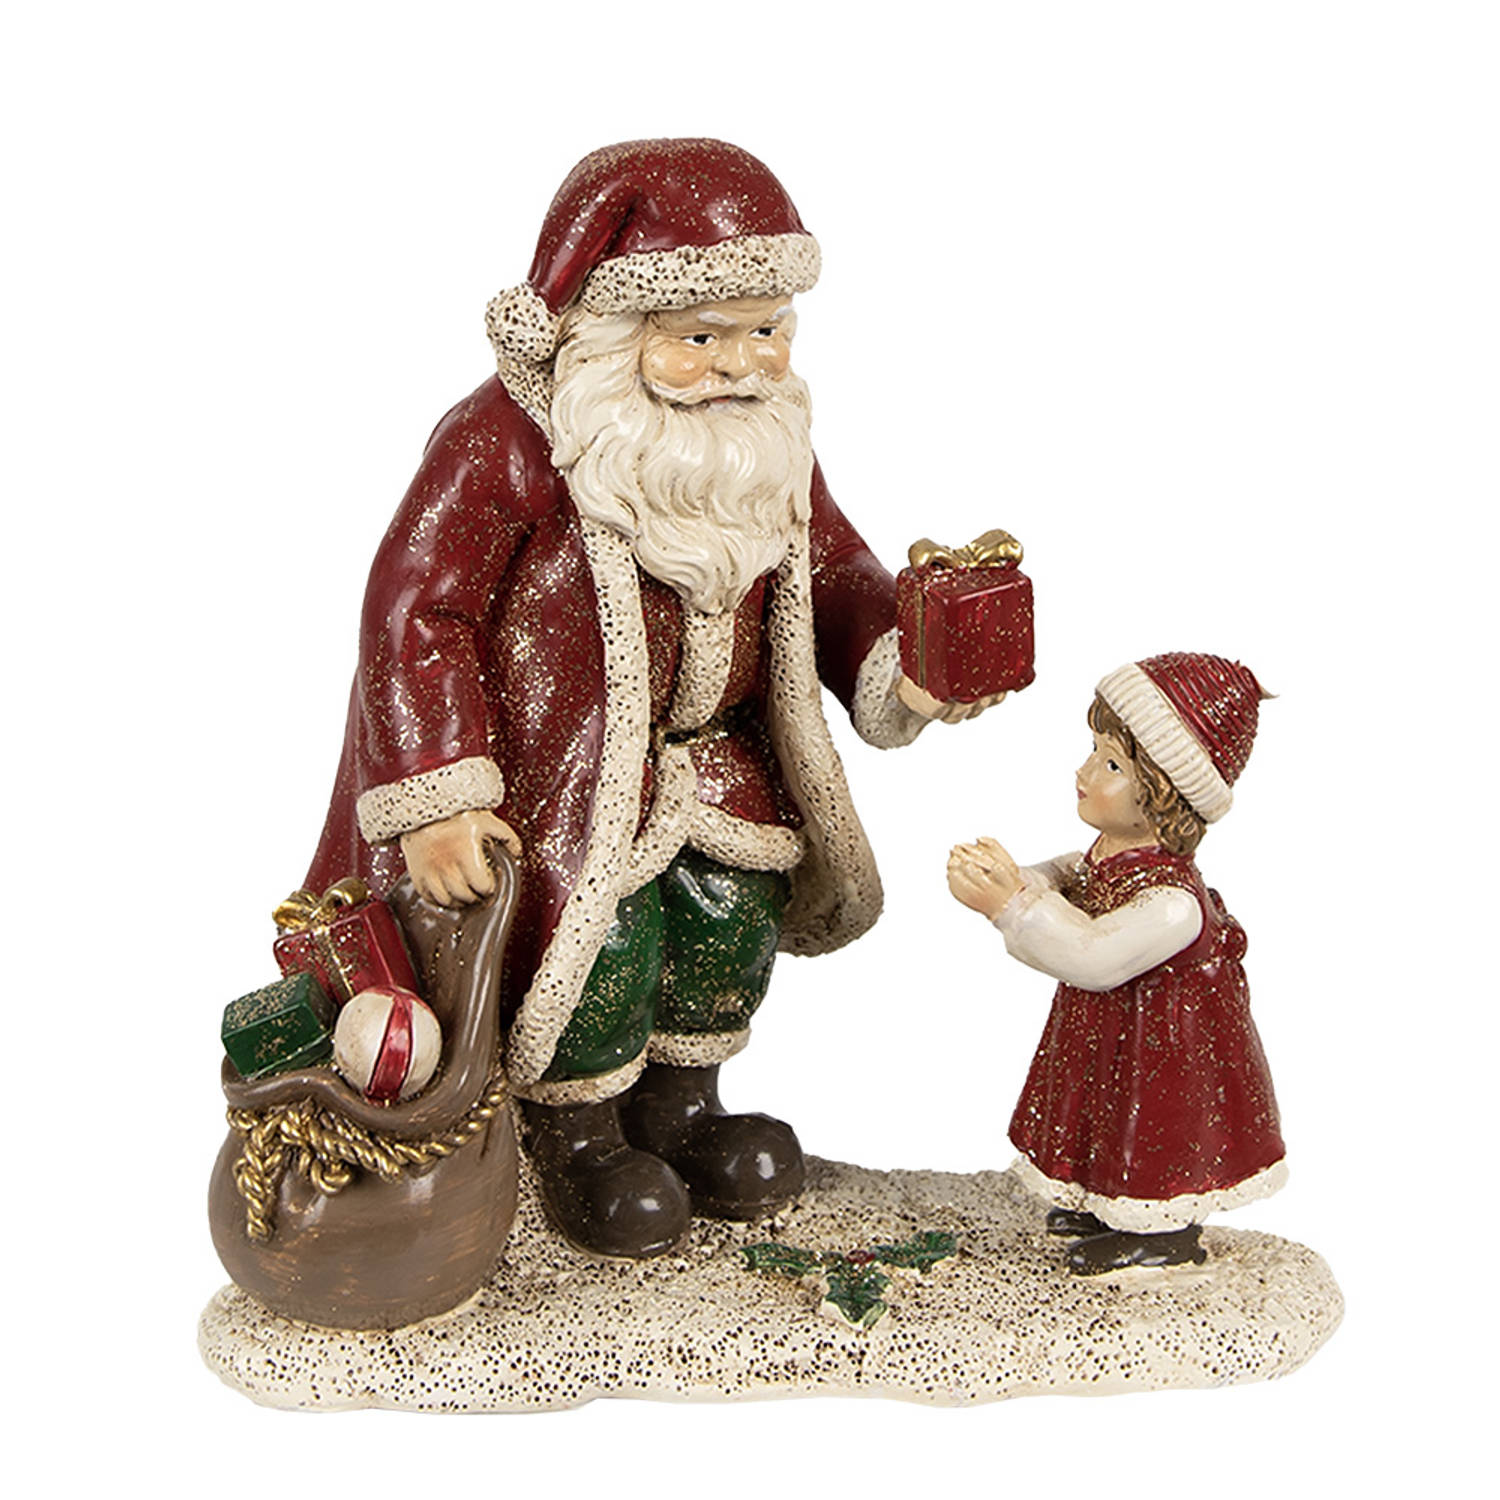 HAES DECO - Kerstman deco Figuur - Formaat 14x9x14 cm - Kleur Rood - Materiaal Polyresin - Kerst Figuur, Kerstdecoratie